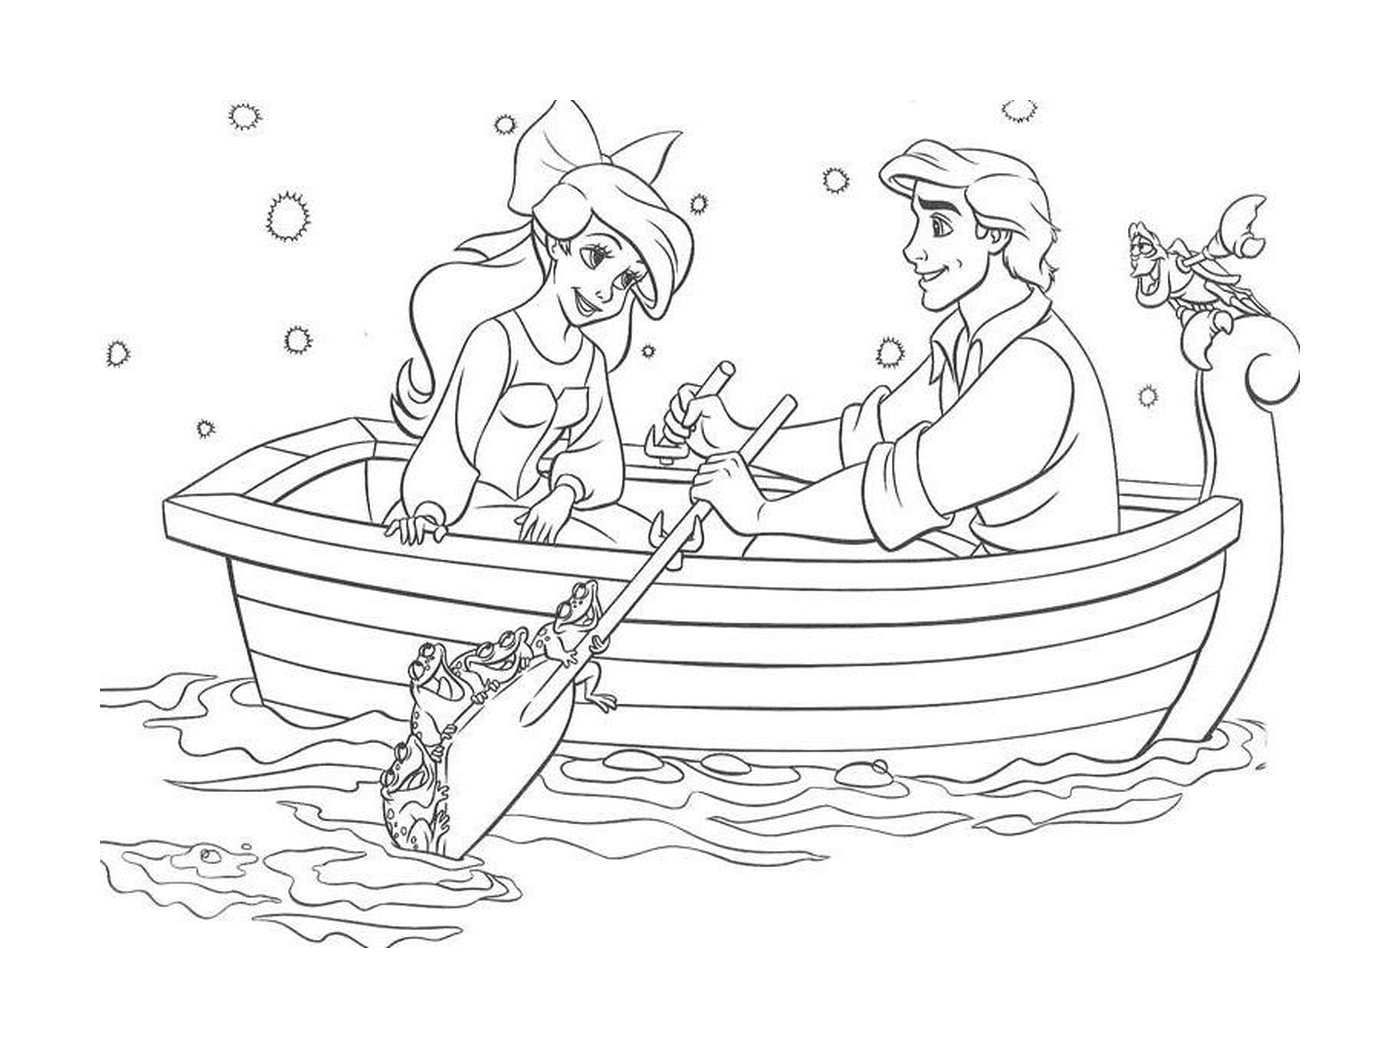   Un couple de personnes dans une barque sur l'eau 